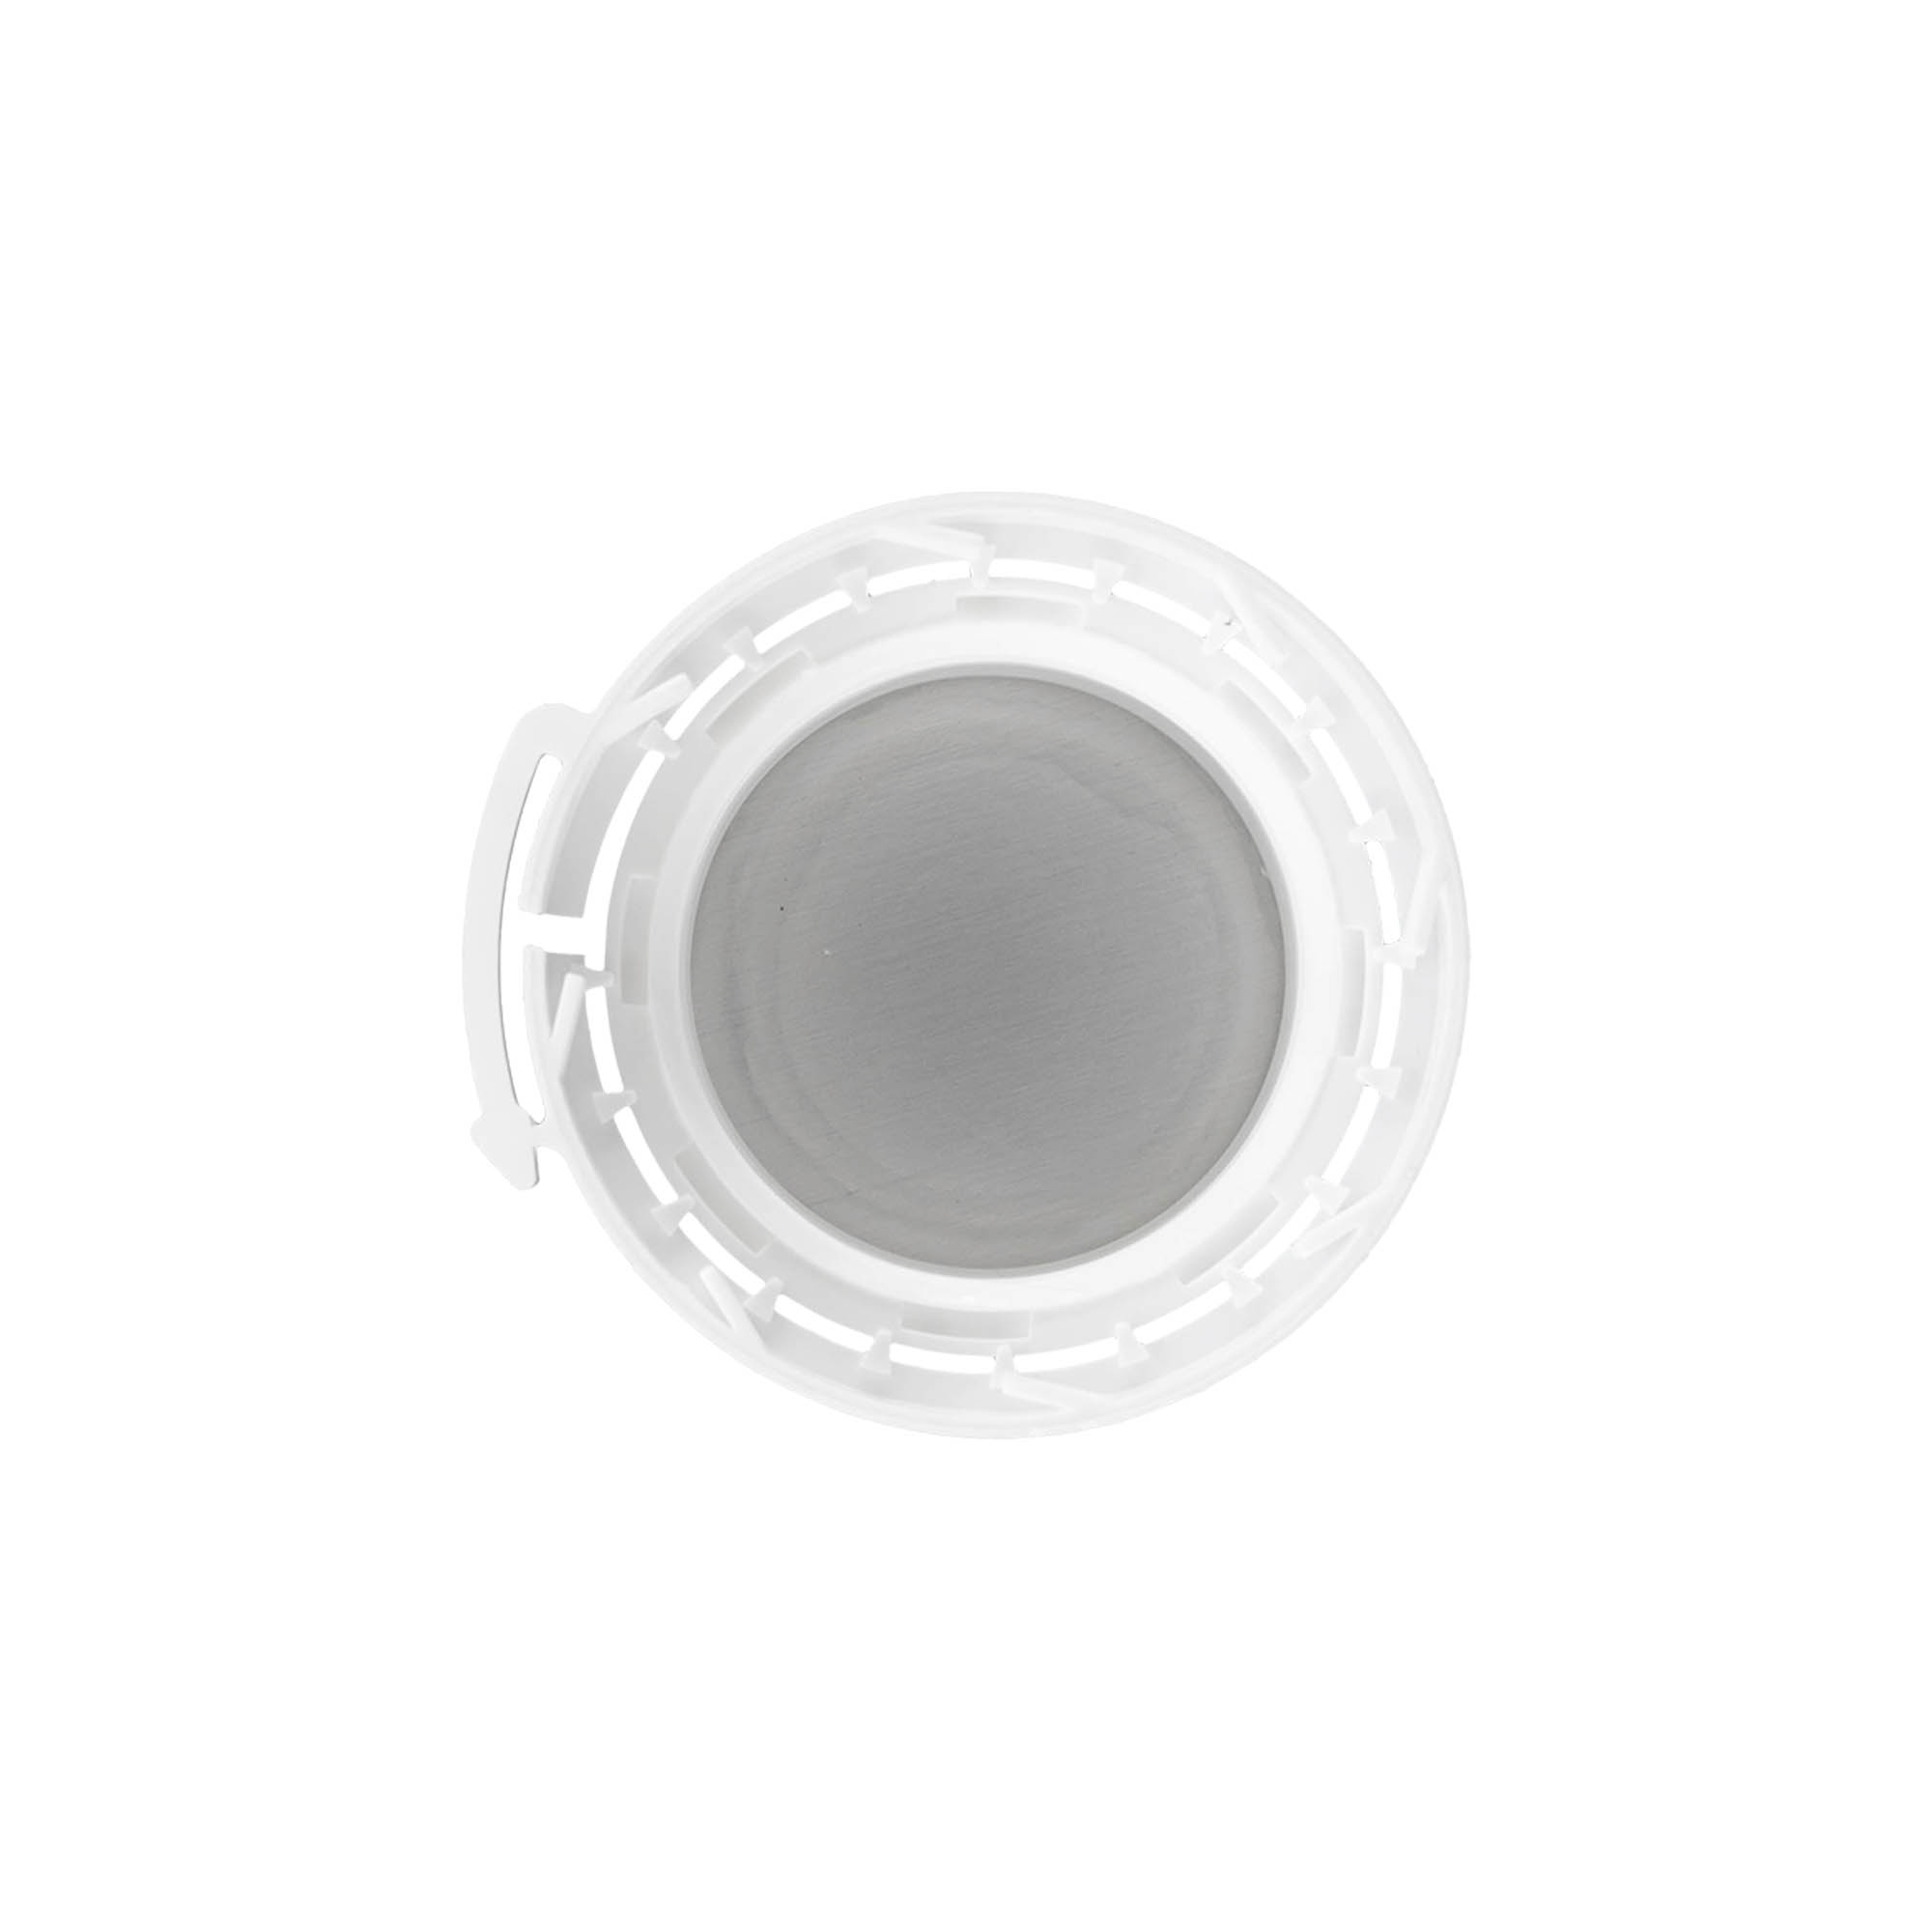 Screw cap for aluminium bottle, PP plastic, white, for opening: DIN 32